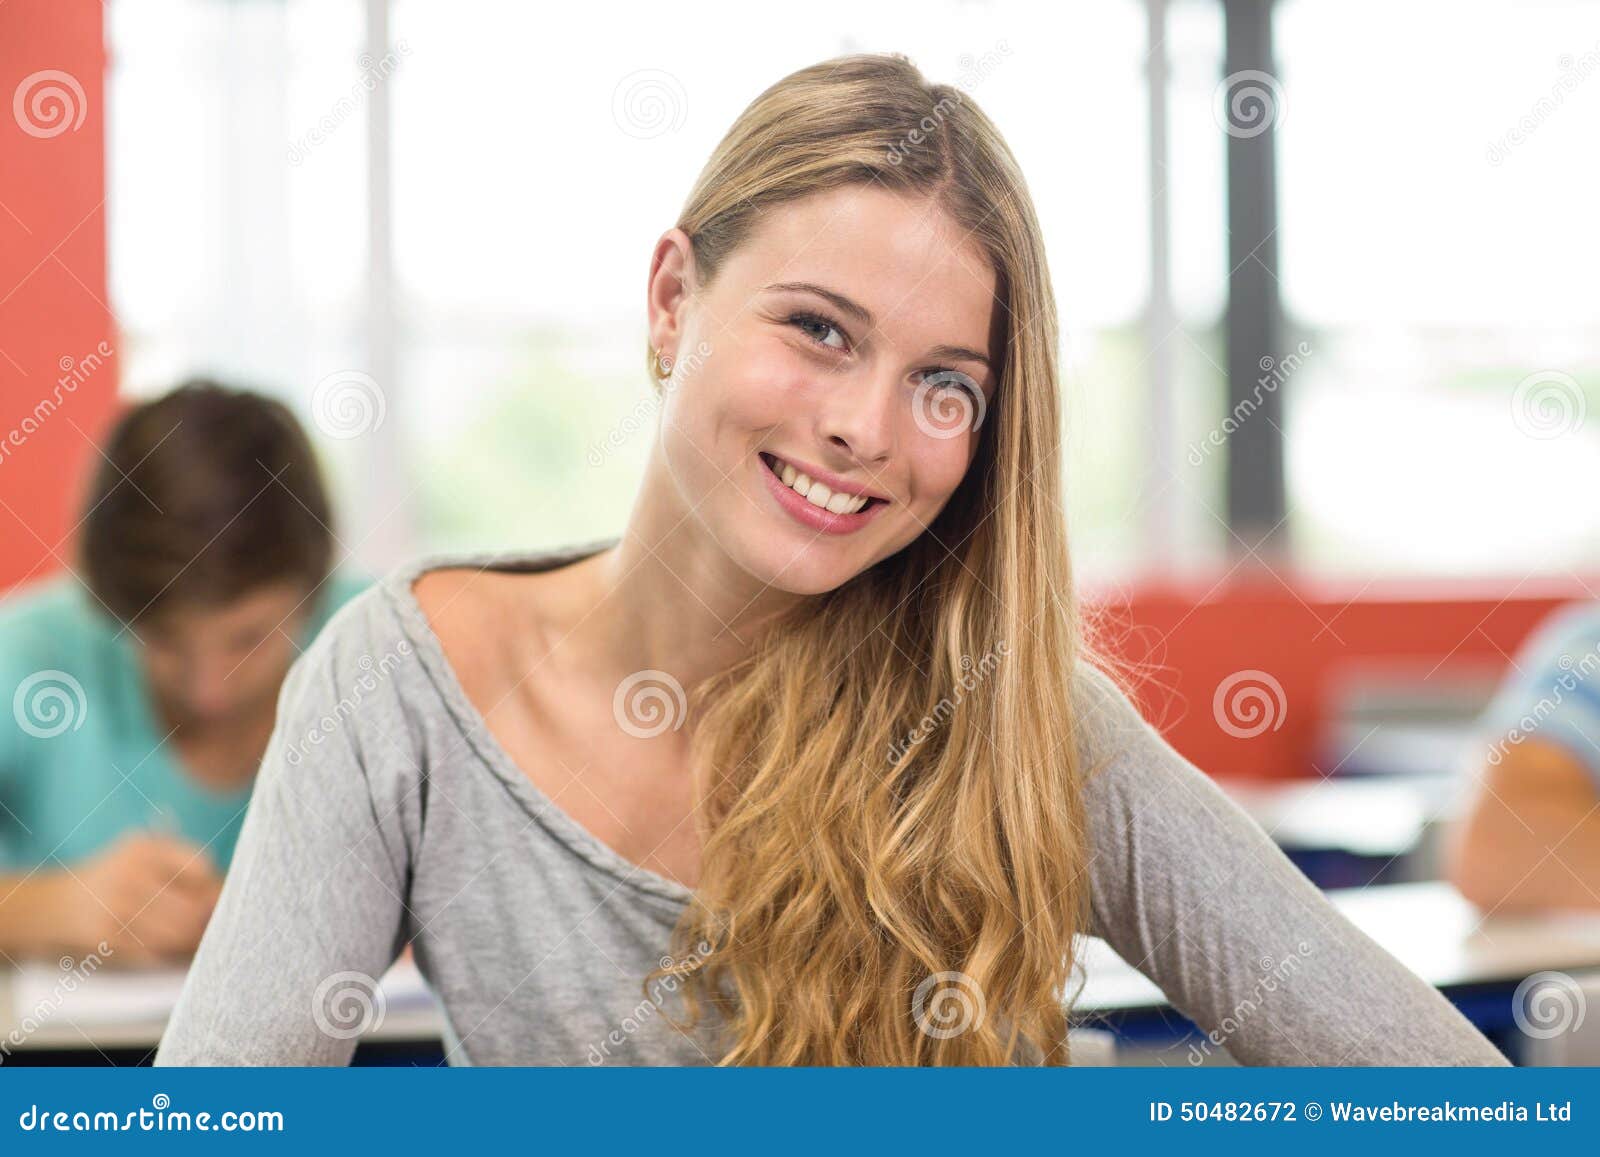 Student blonde. Девушка студентка улыбается. Улыбчивый студентка. Студентка стильная улыбается. Студентка улыбается в камеру.